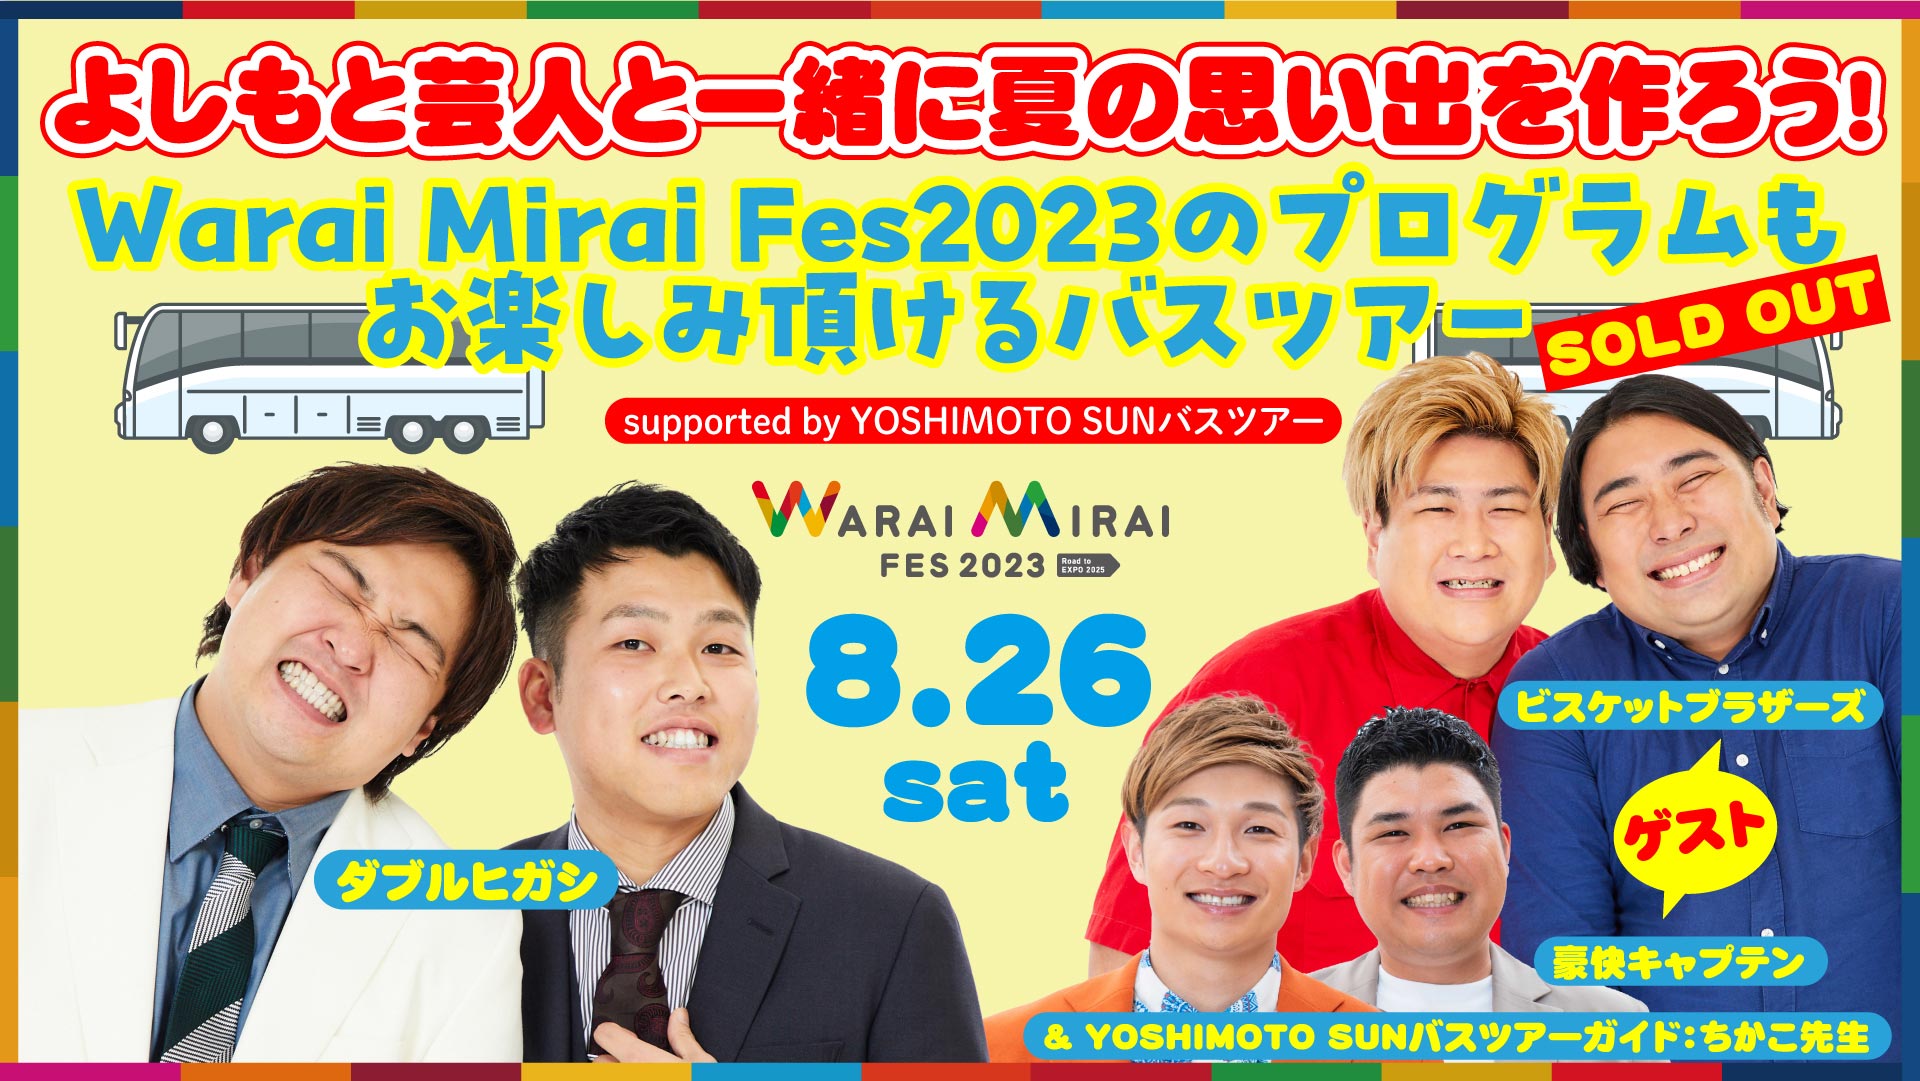 よしもと芸人と一緒に夏の思い出を作ろう！Warai Mirai Fes2023のプログラムもお楽しみ頂けるバスツアーsupported by YOSHIMOTO SUNバスツアー